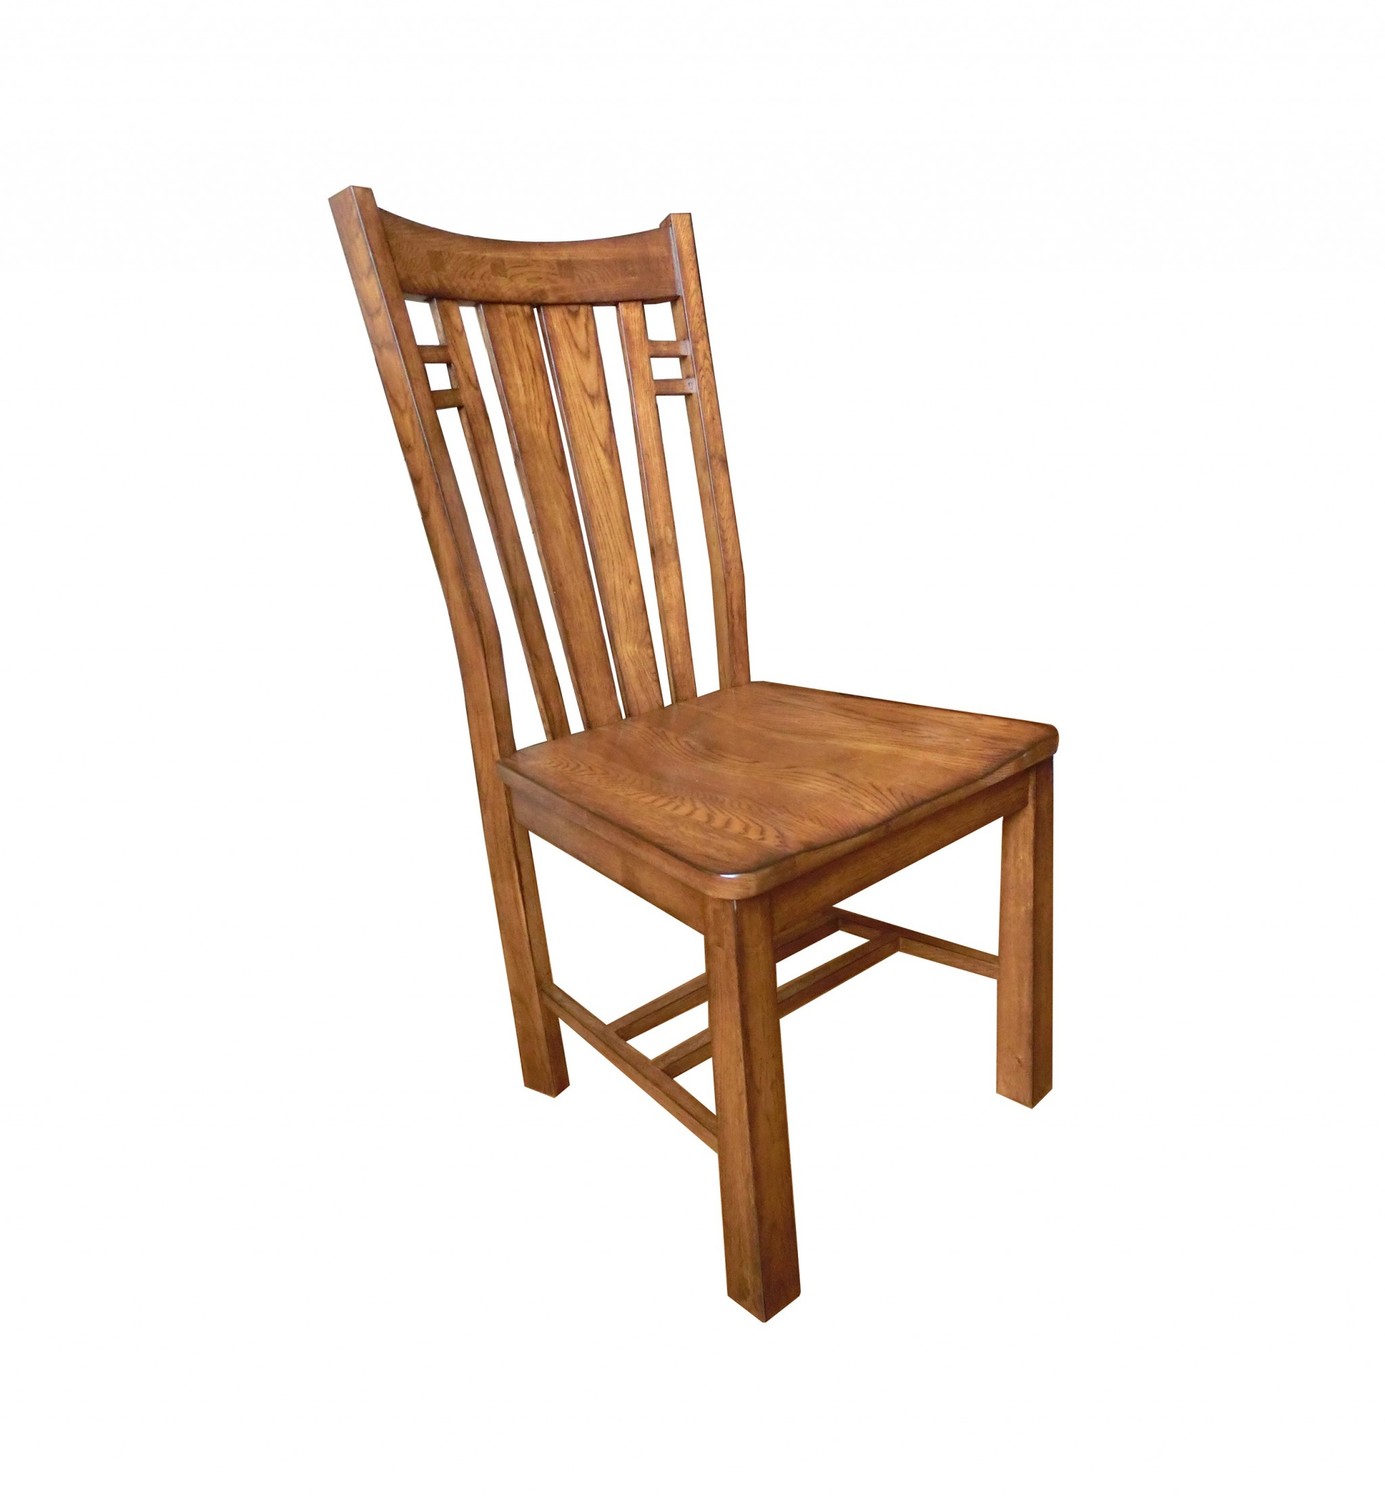 22" X 17" X 39" Burnished Walnut Hardwood Side Chair